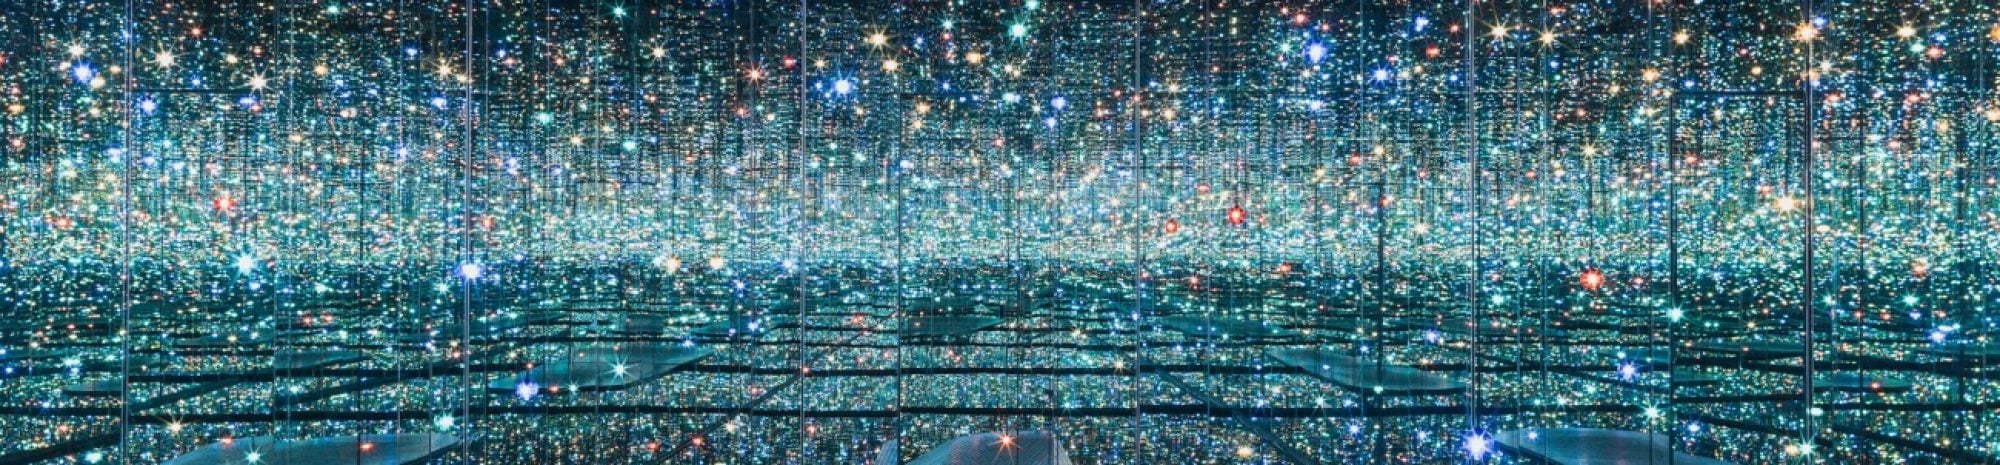 Yayoi Kusama expose ses miroirs de l’infini à New York